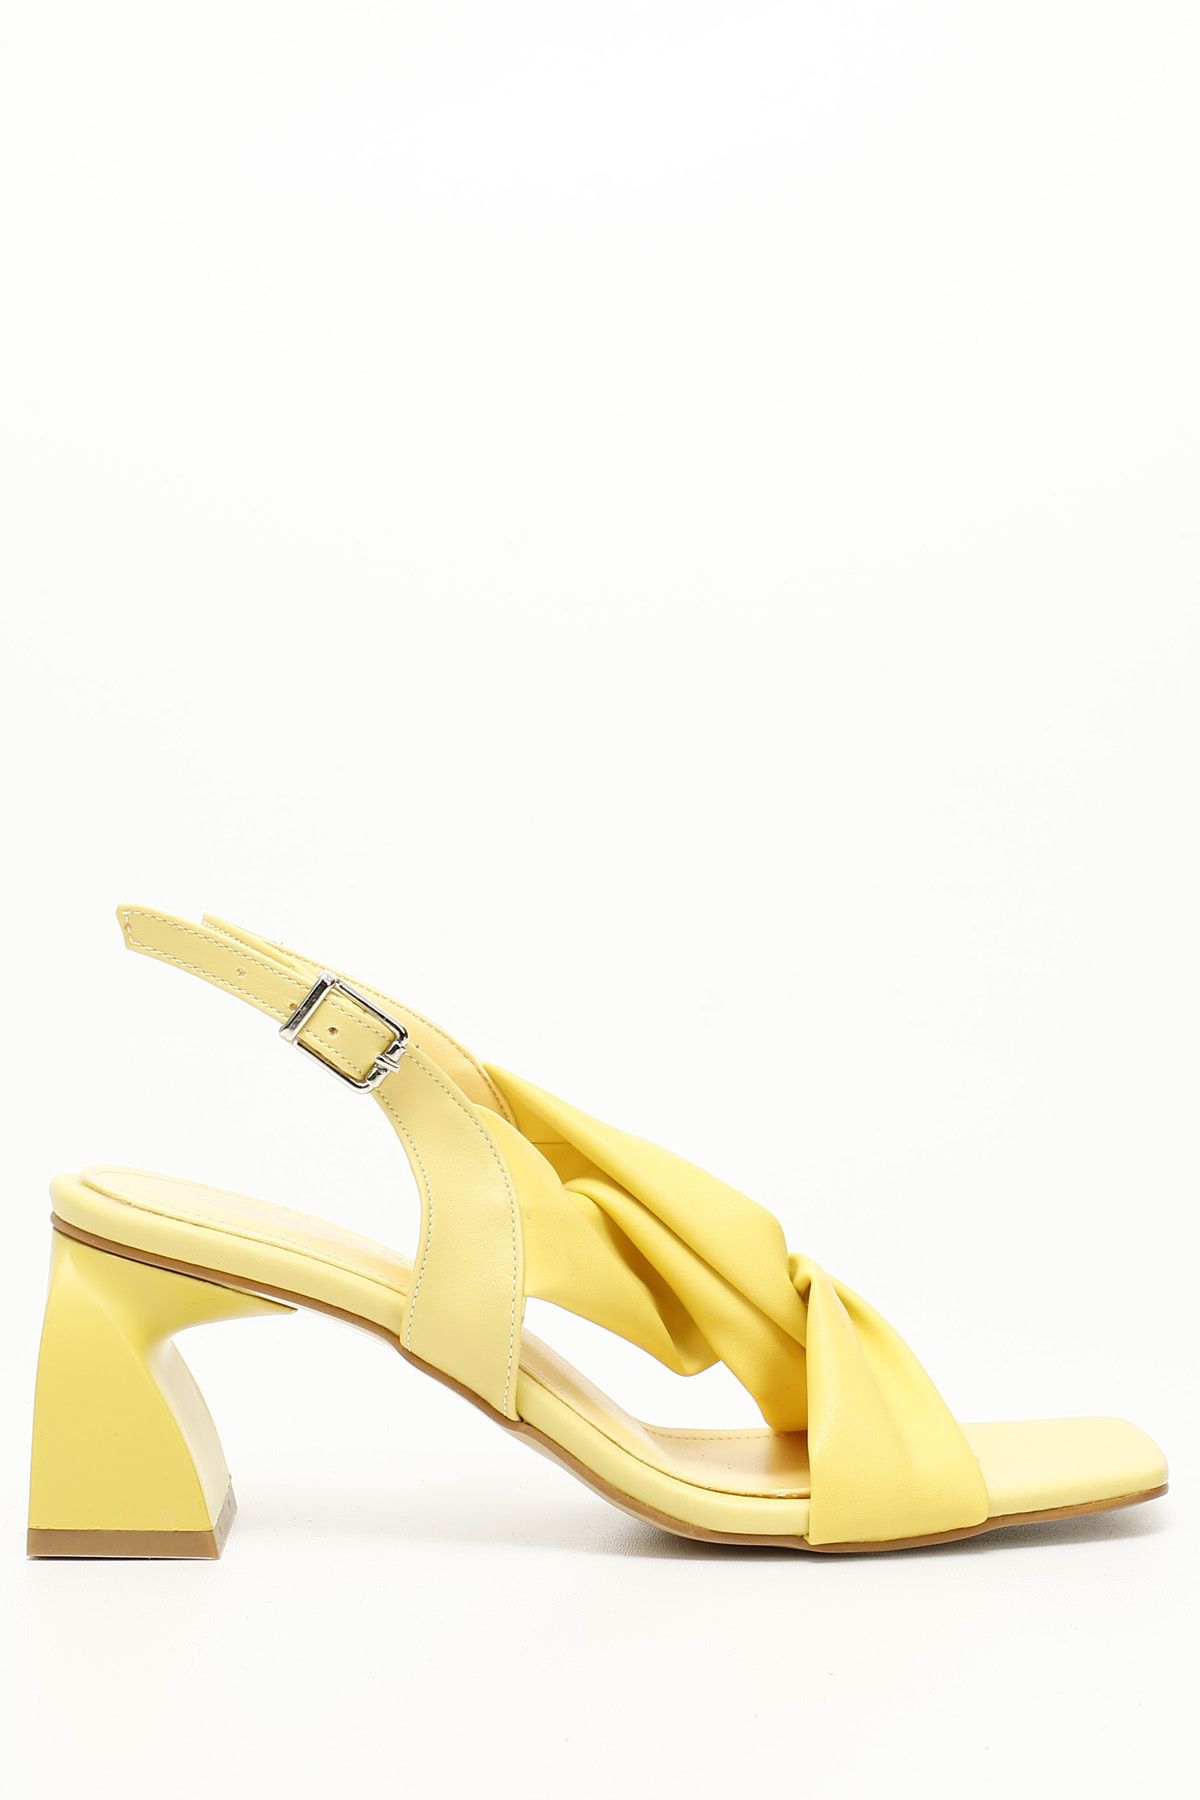 GÖNDERİ(R) Sarı Gön Kalın Topuklu Çapraz Bantlı Kadın Sandalet 35535